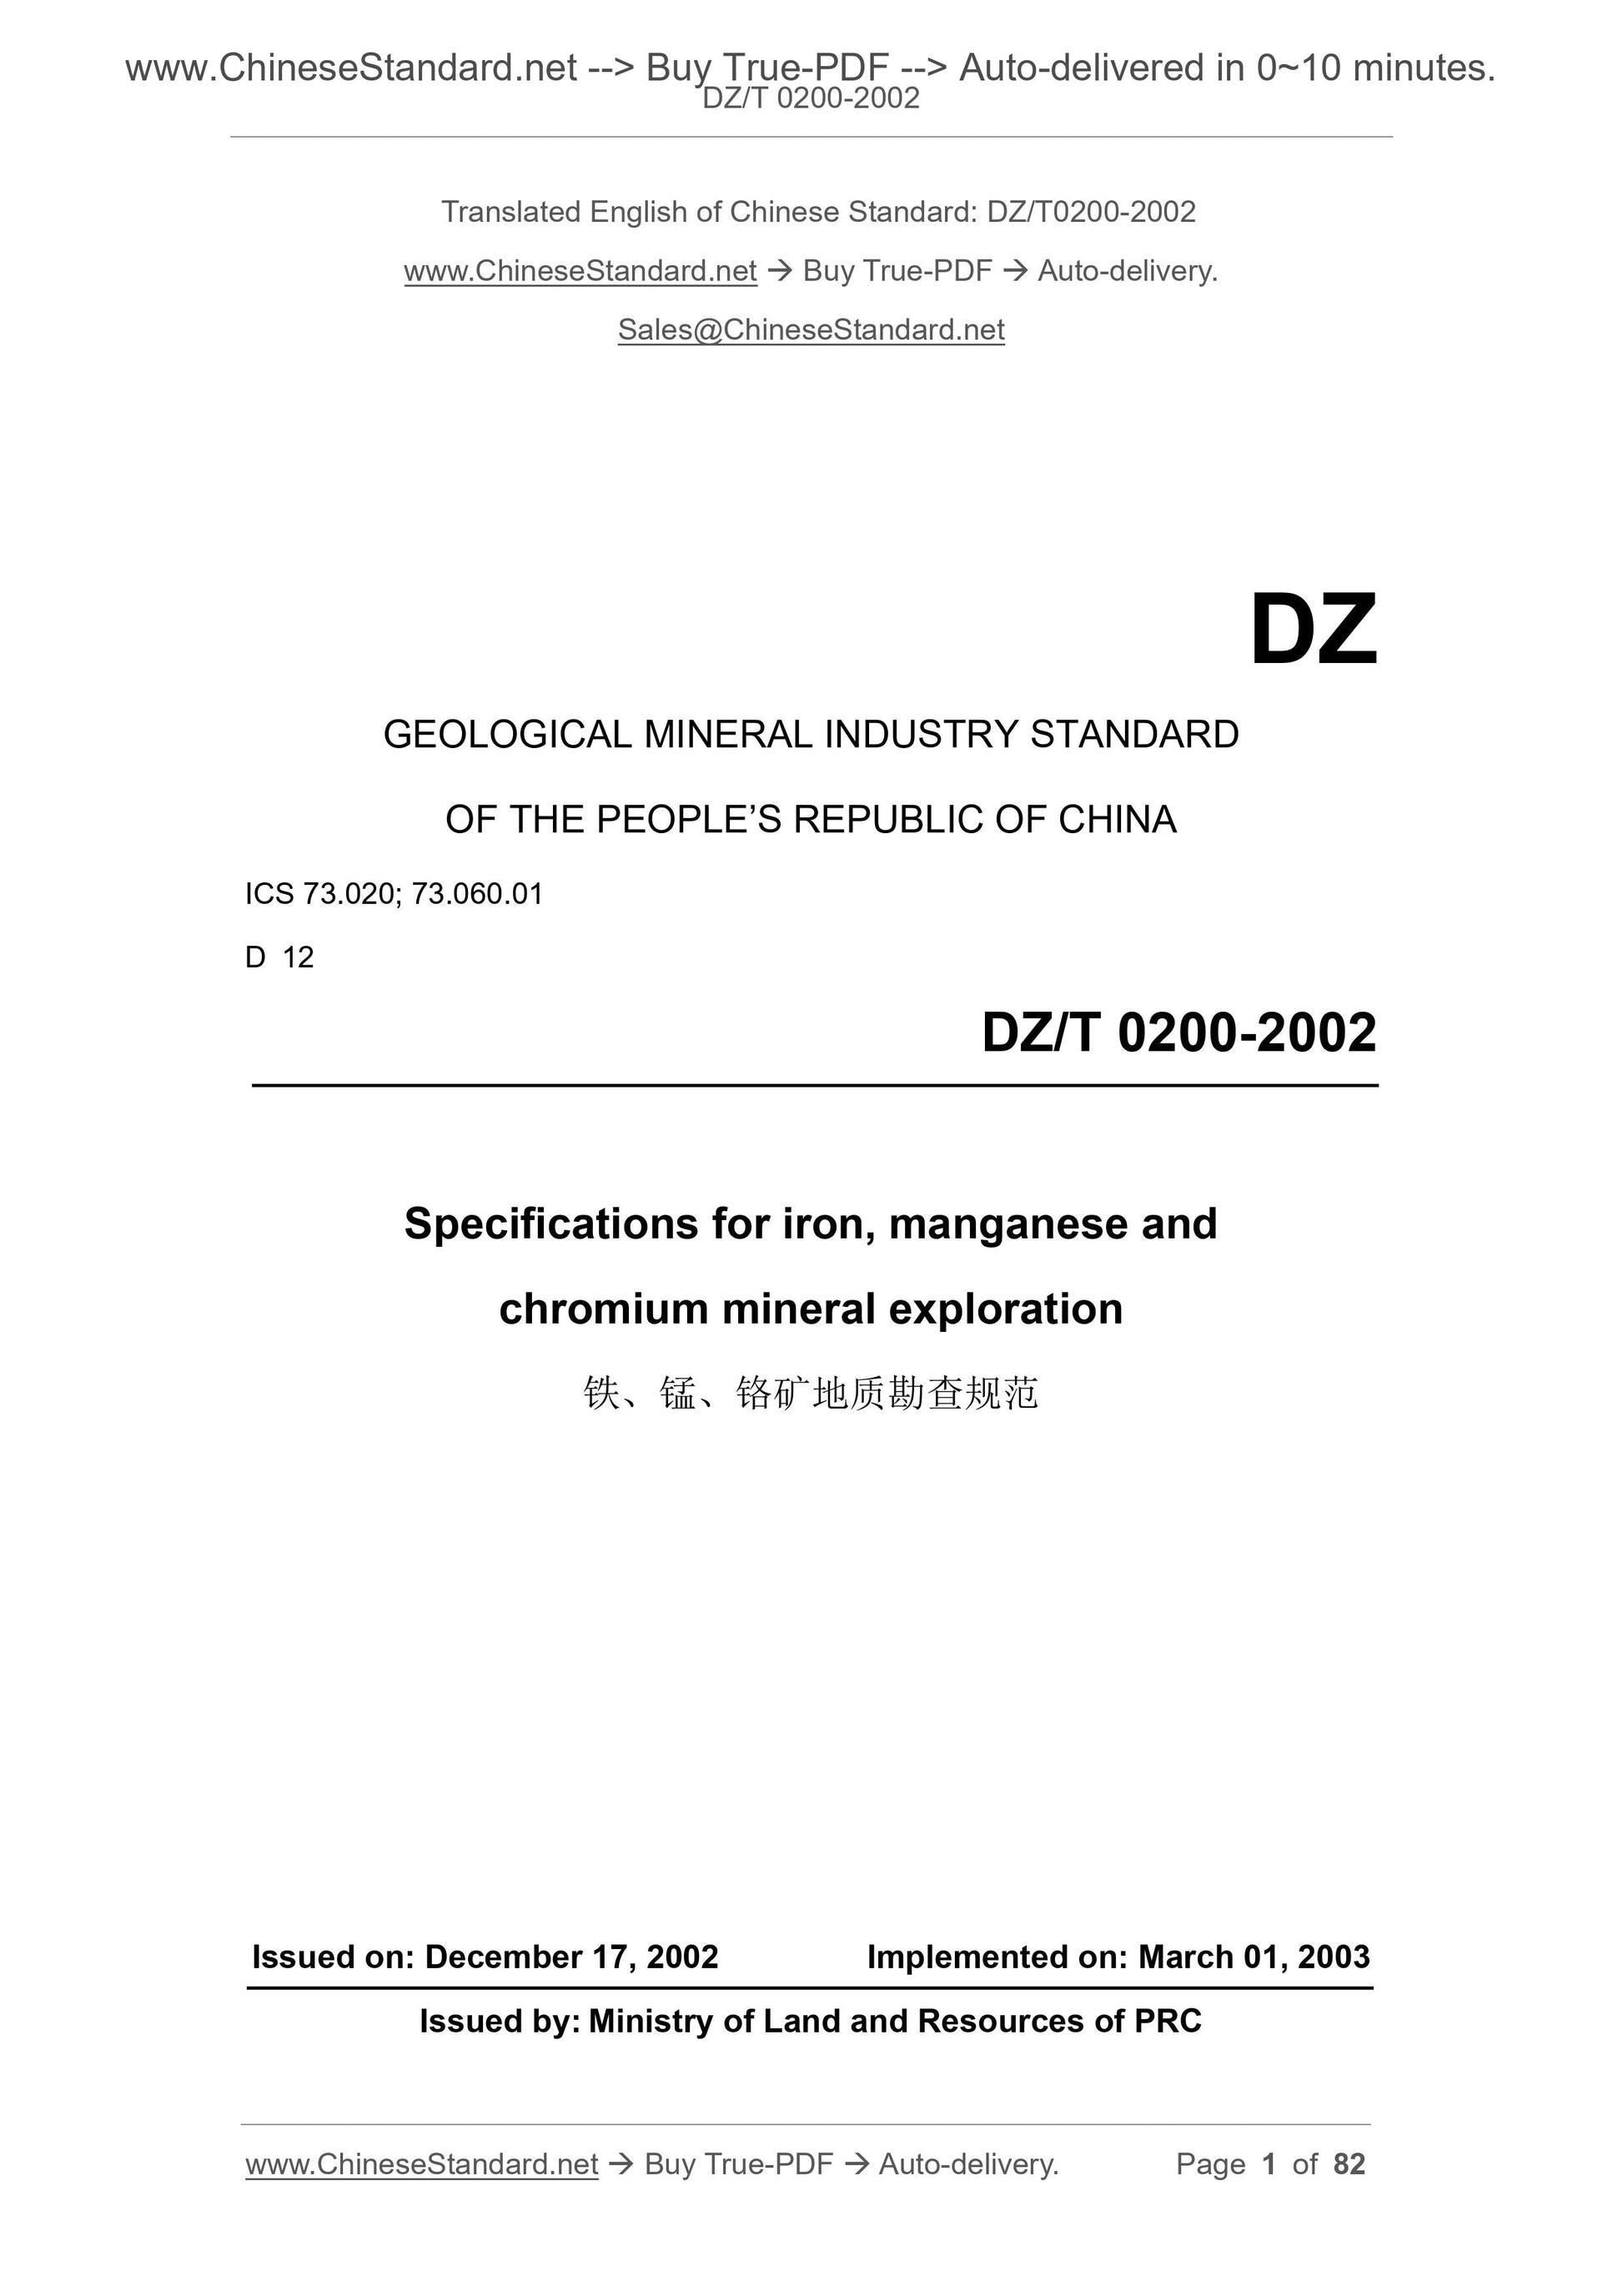 DZ/T 0200-2002 Page 1